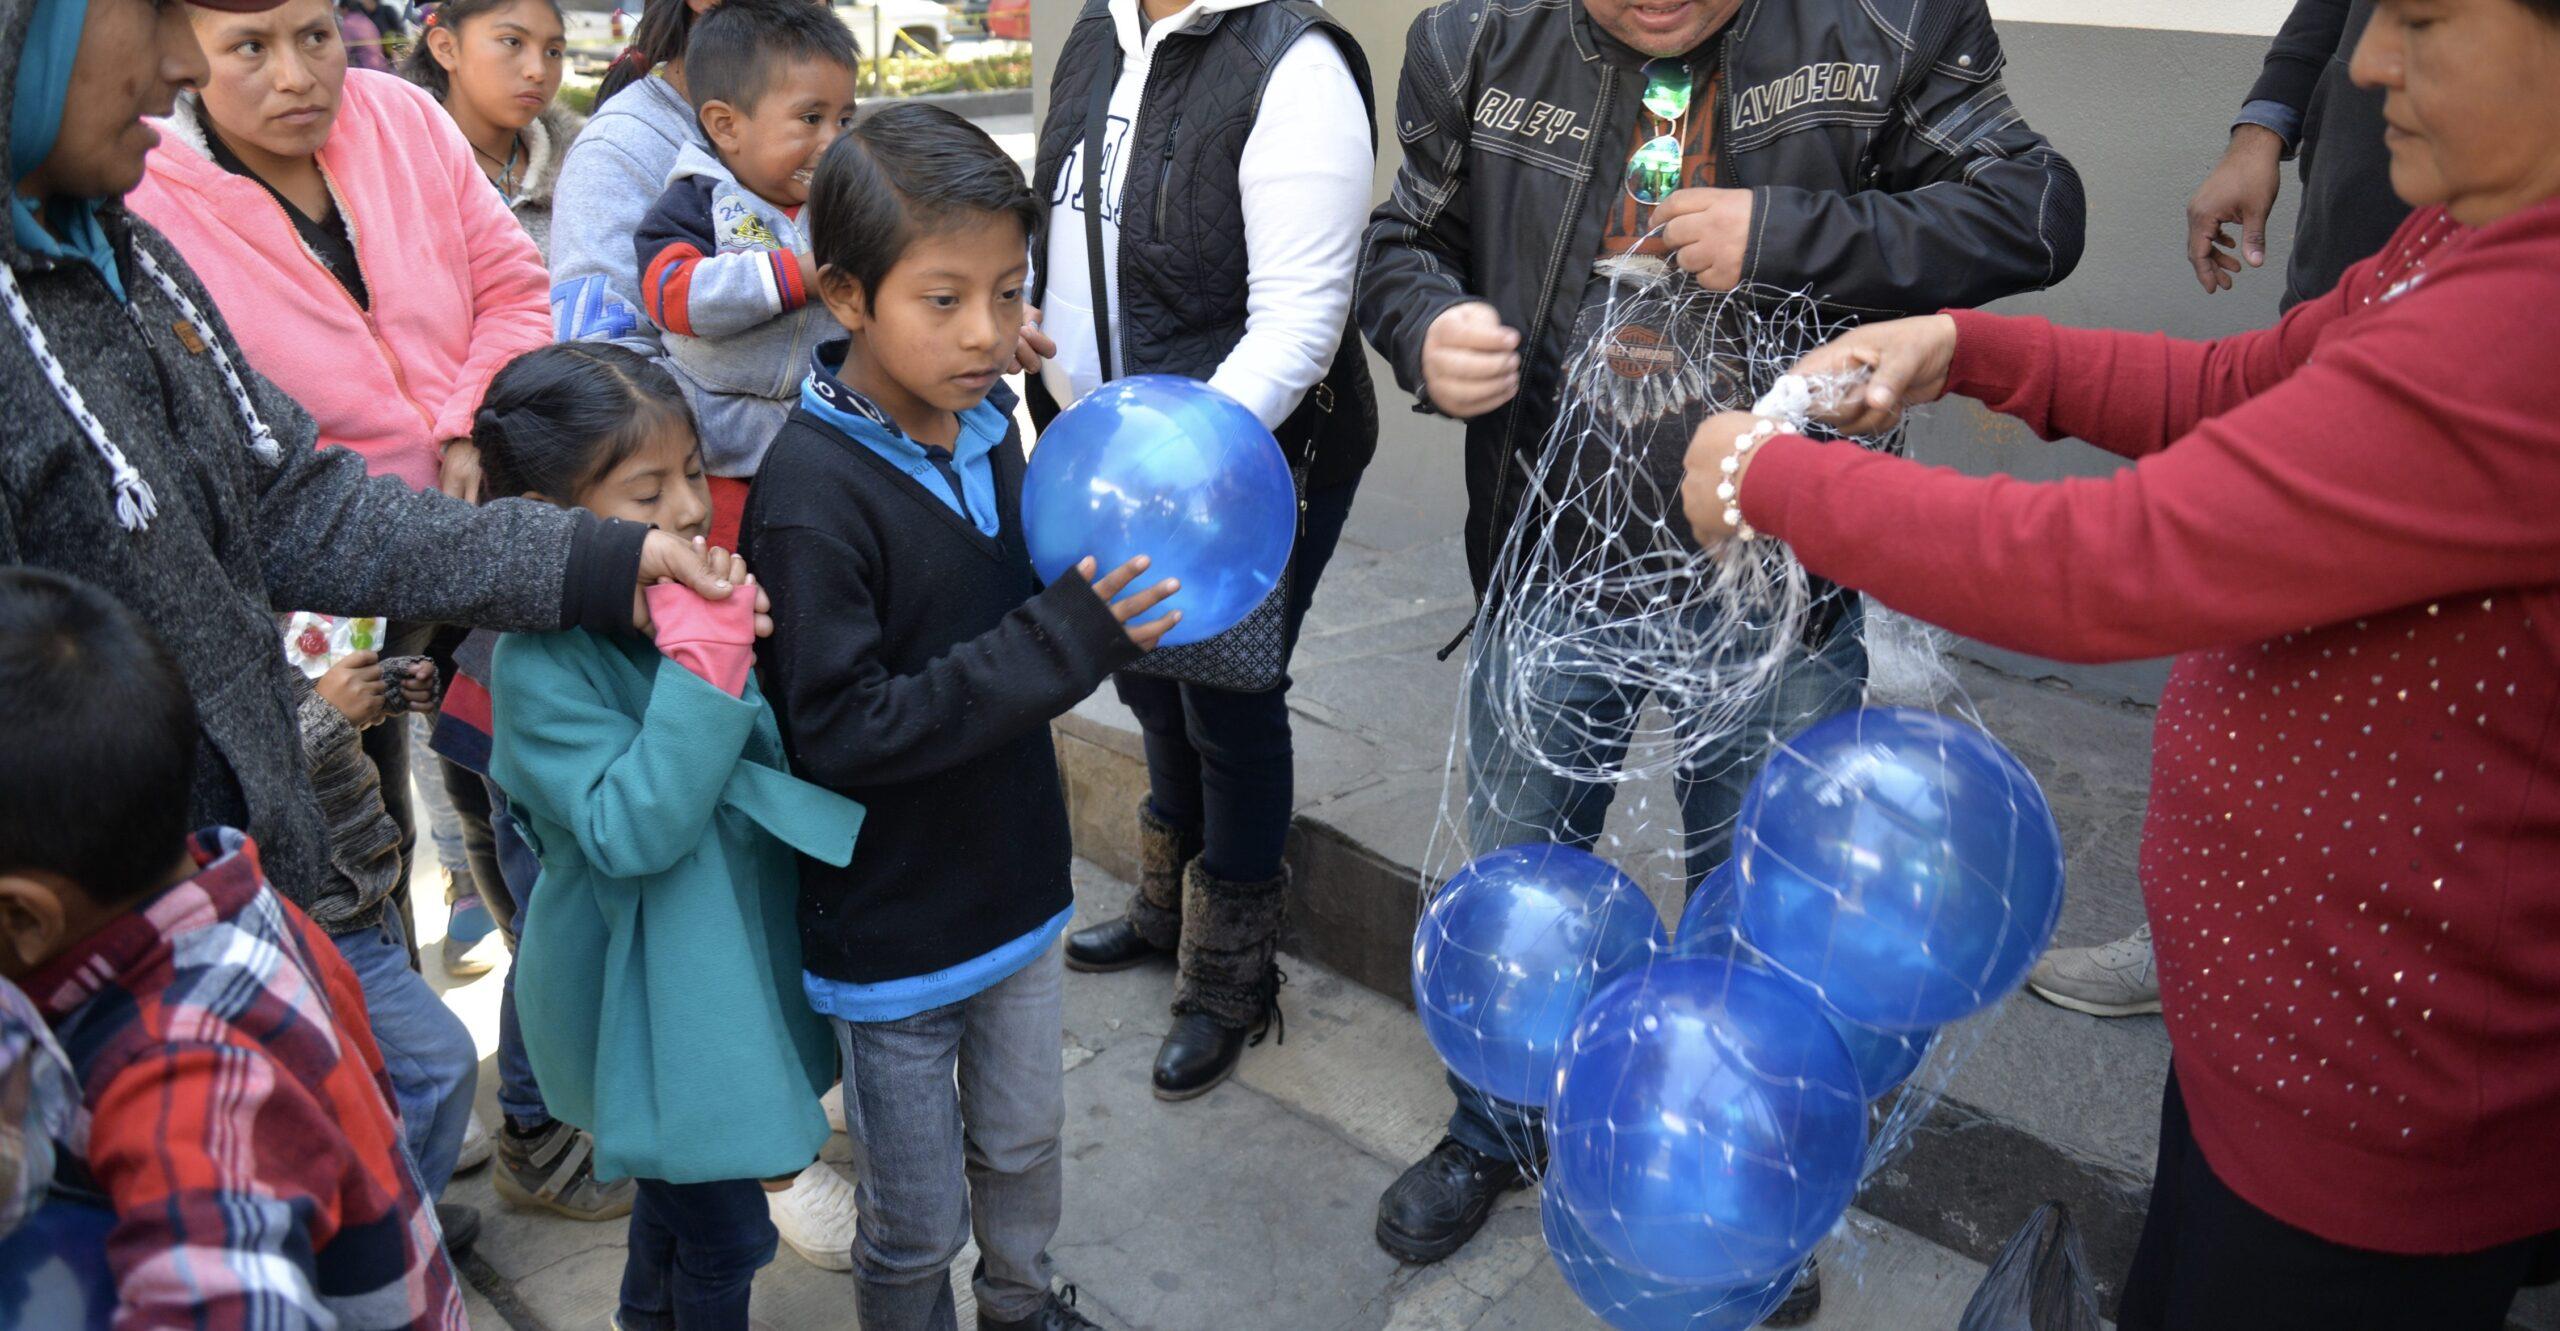 Gobierno de la CDMX festejará Día de Reyes regalando juguetes y rompiendo mil piñatas en el Zócalo